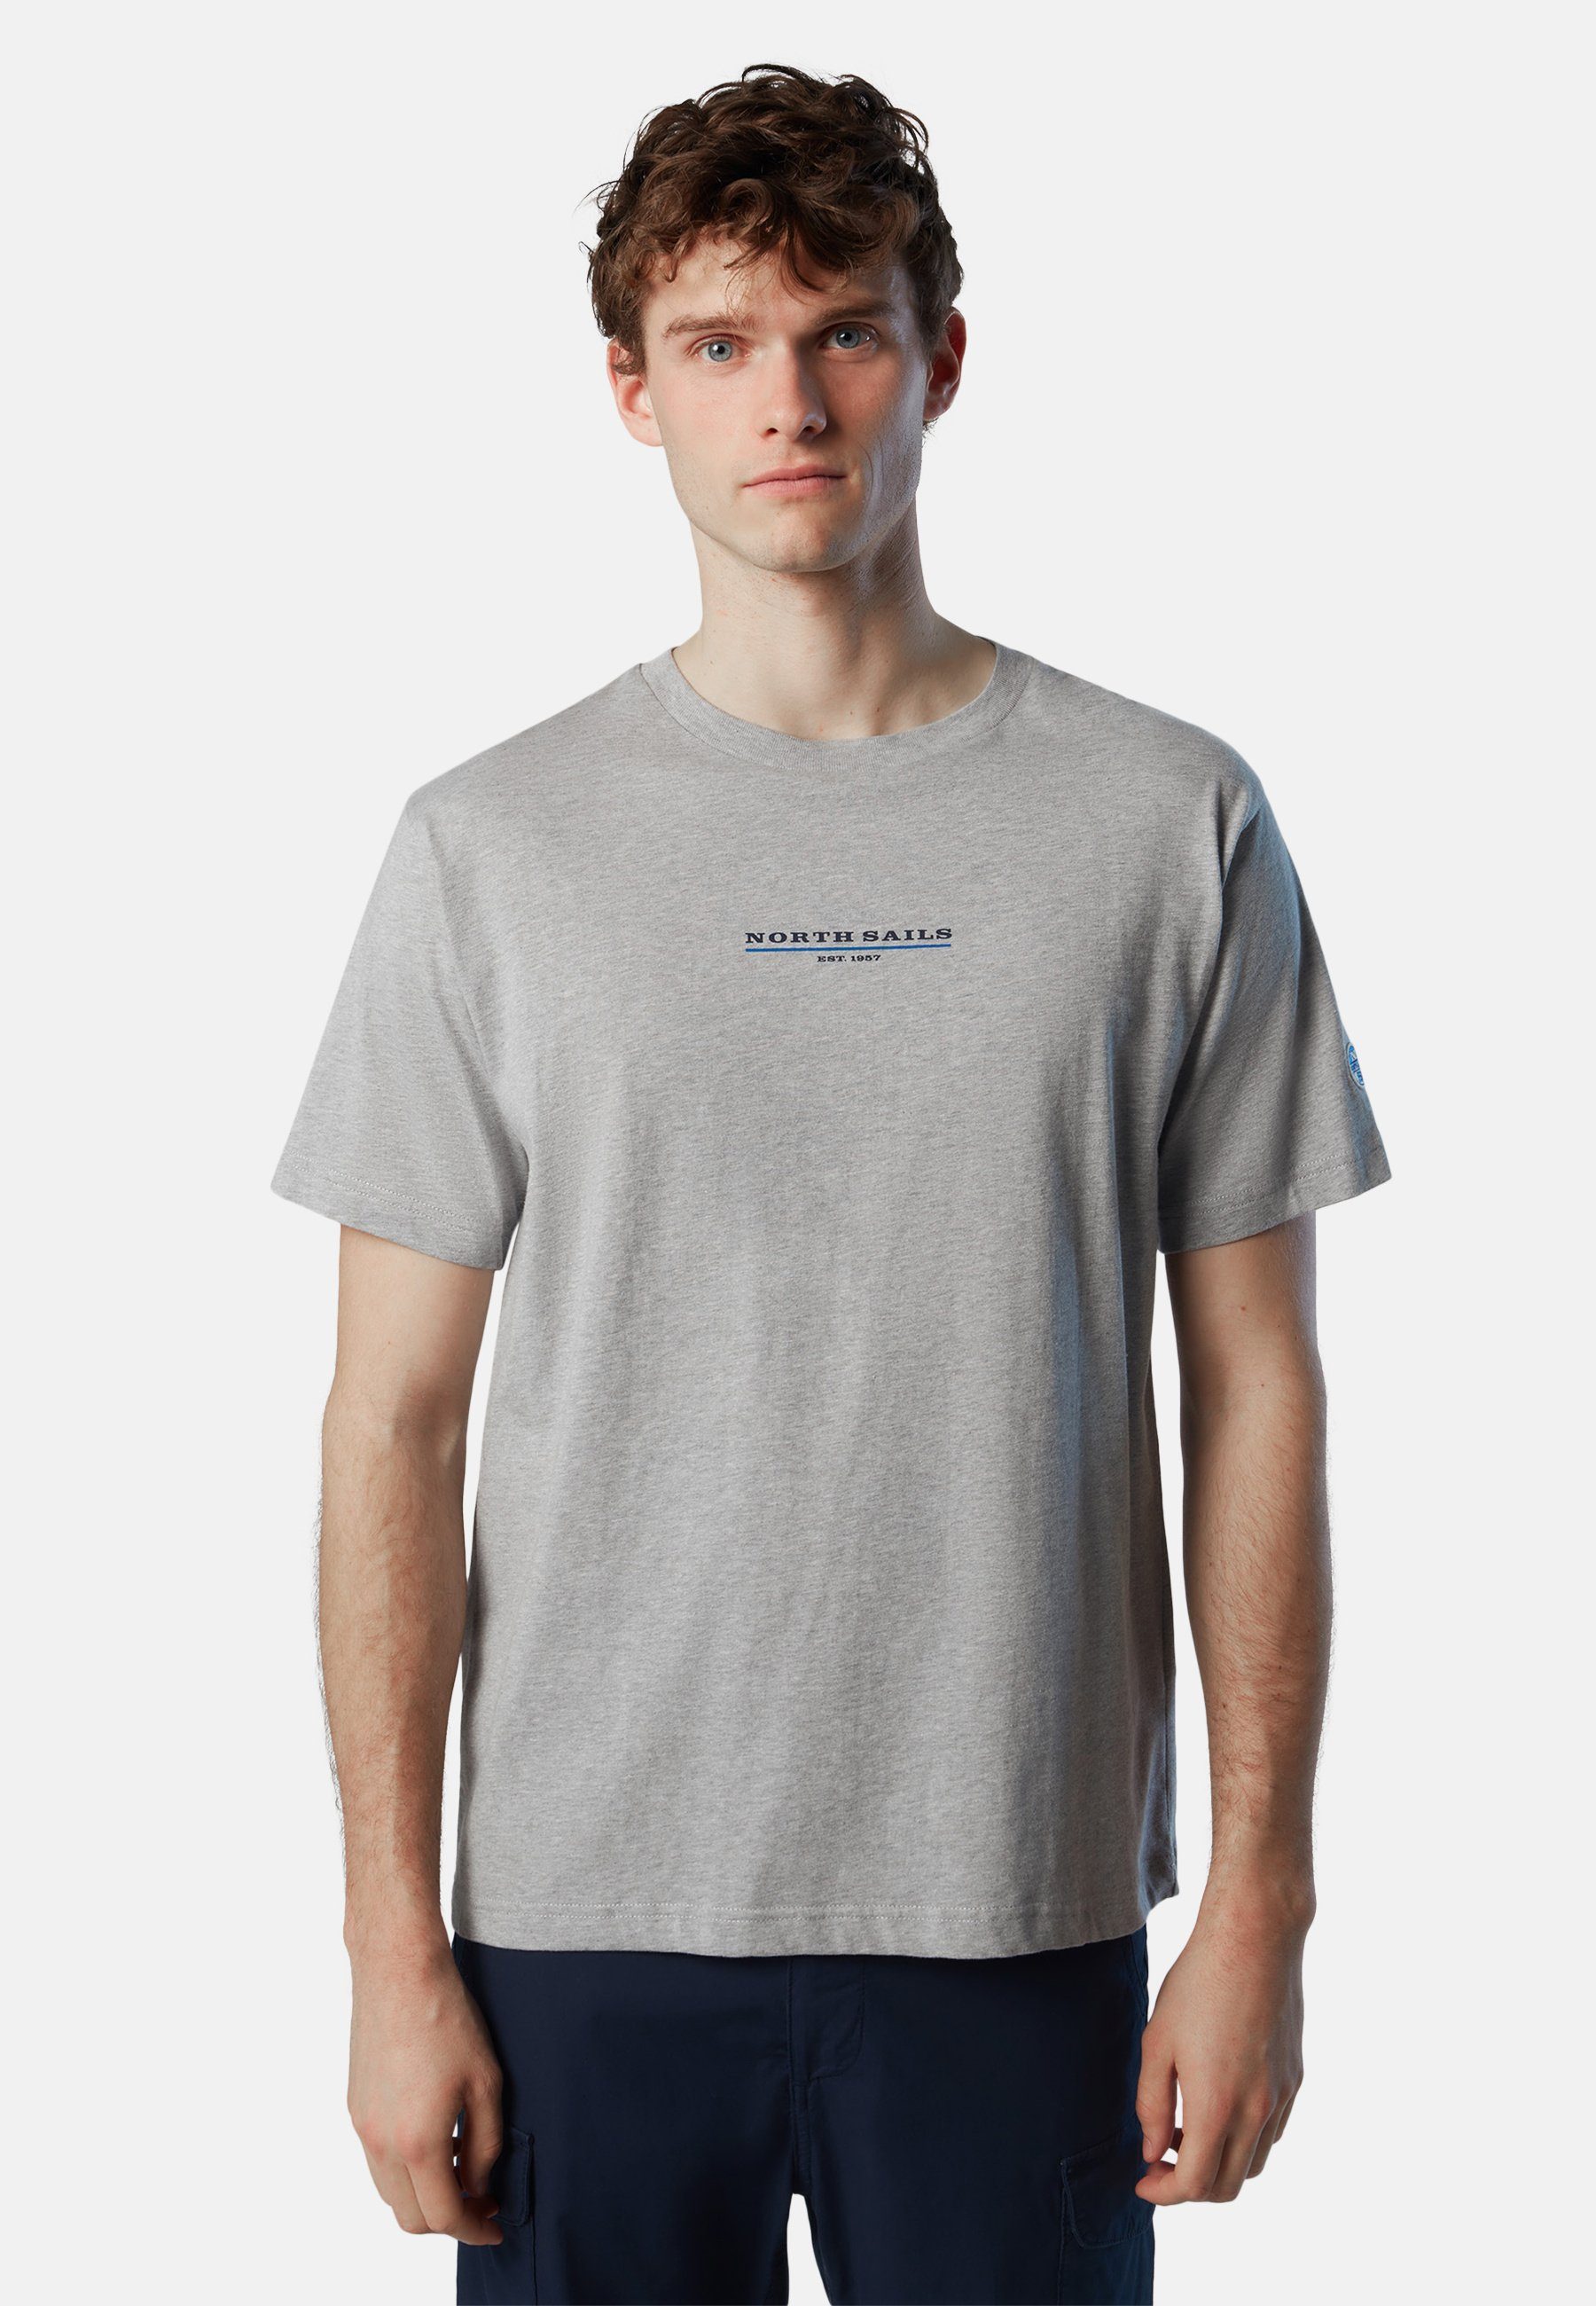 grey Sails mit Brustaufdruck North T-Shirt T-Shirt